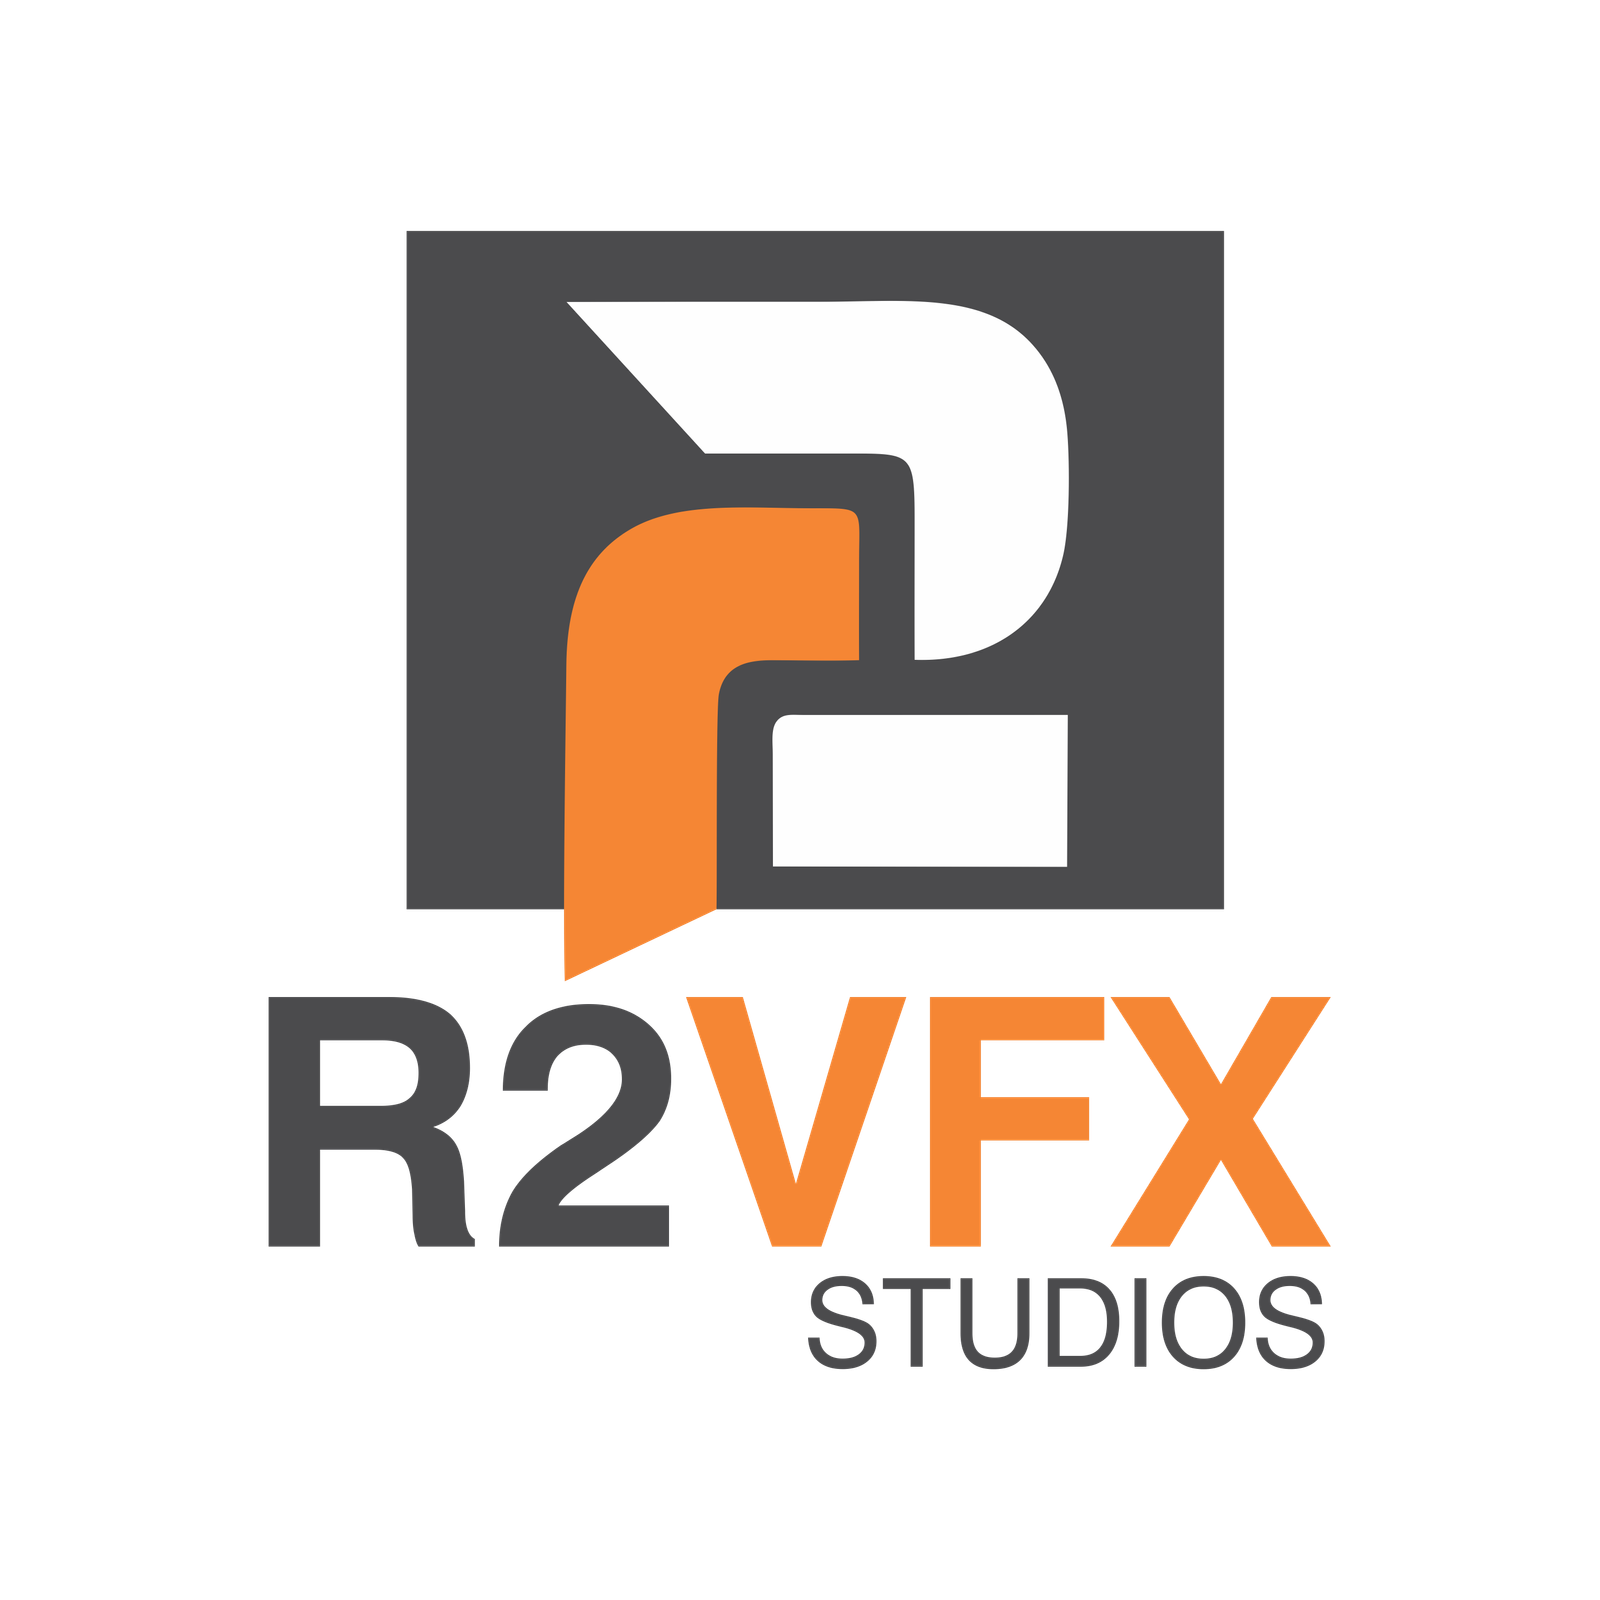 R2VFX Studios